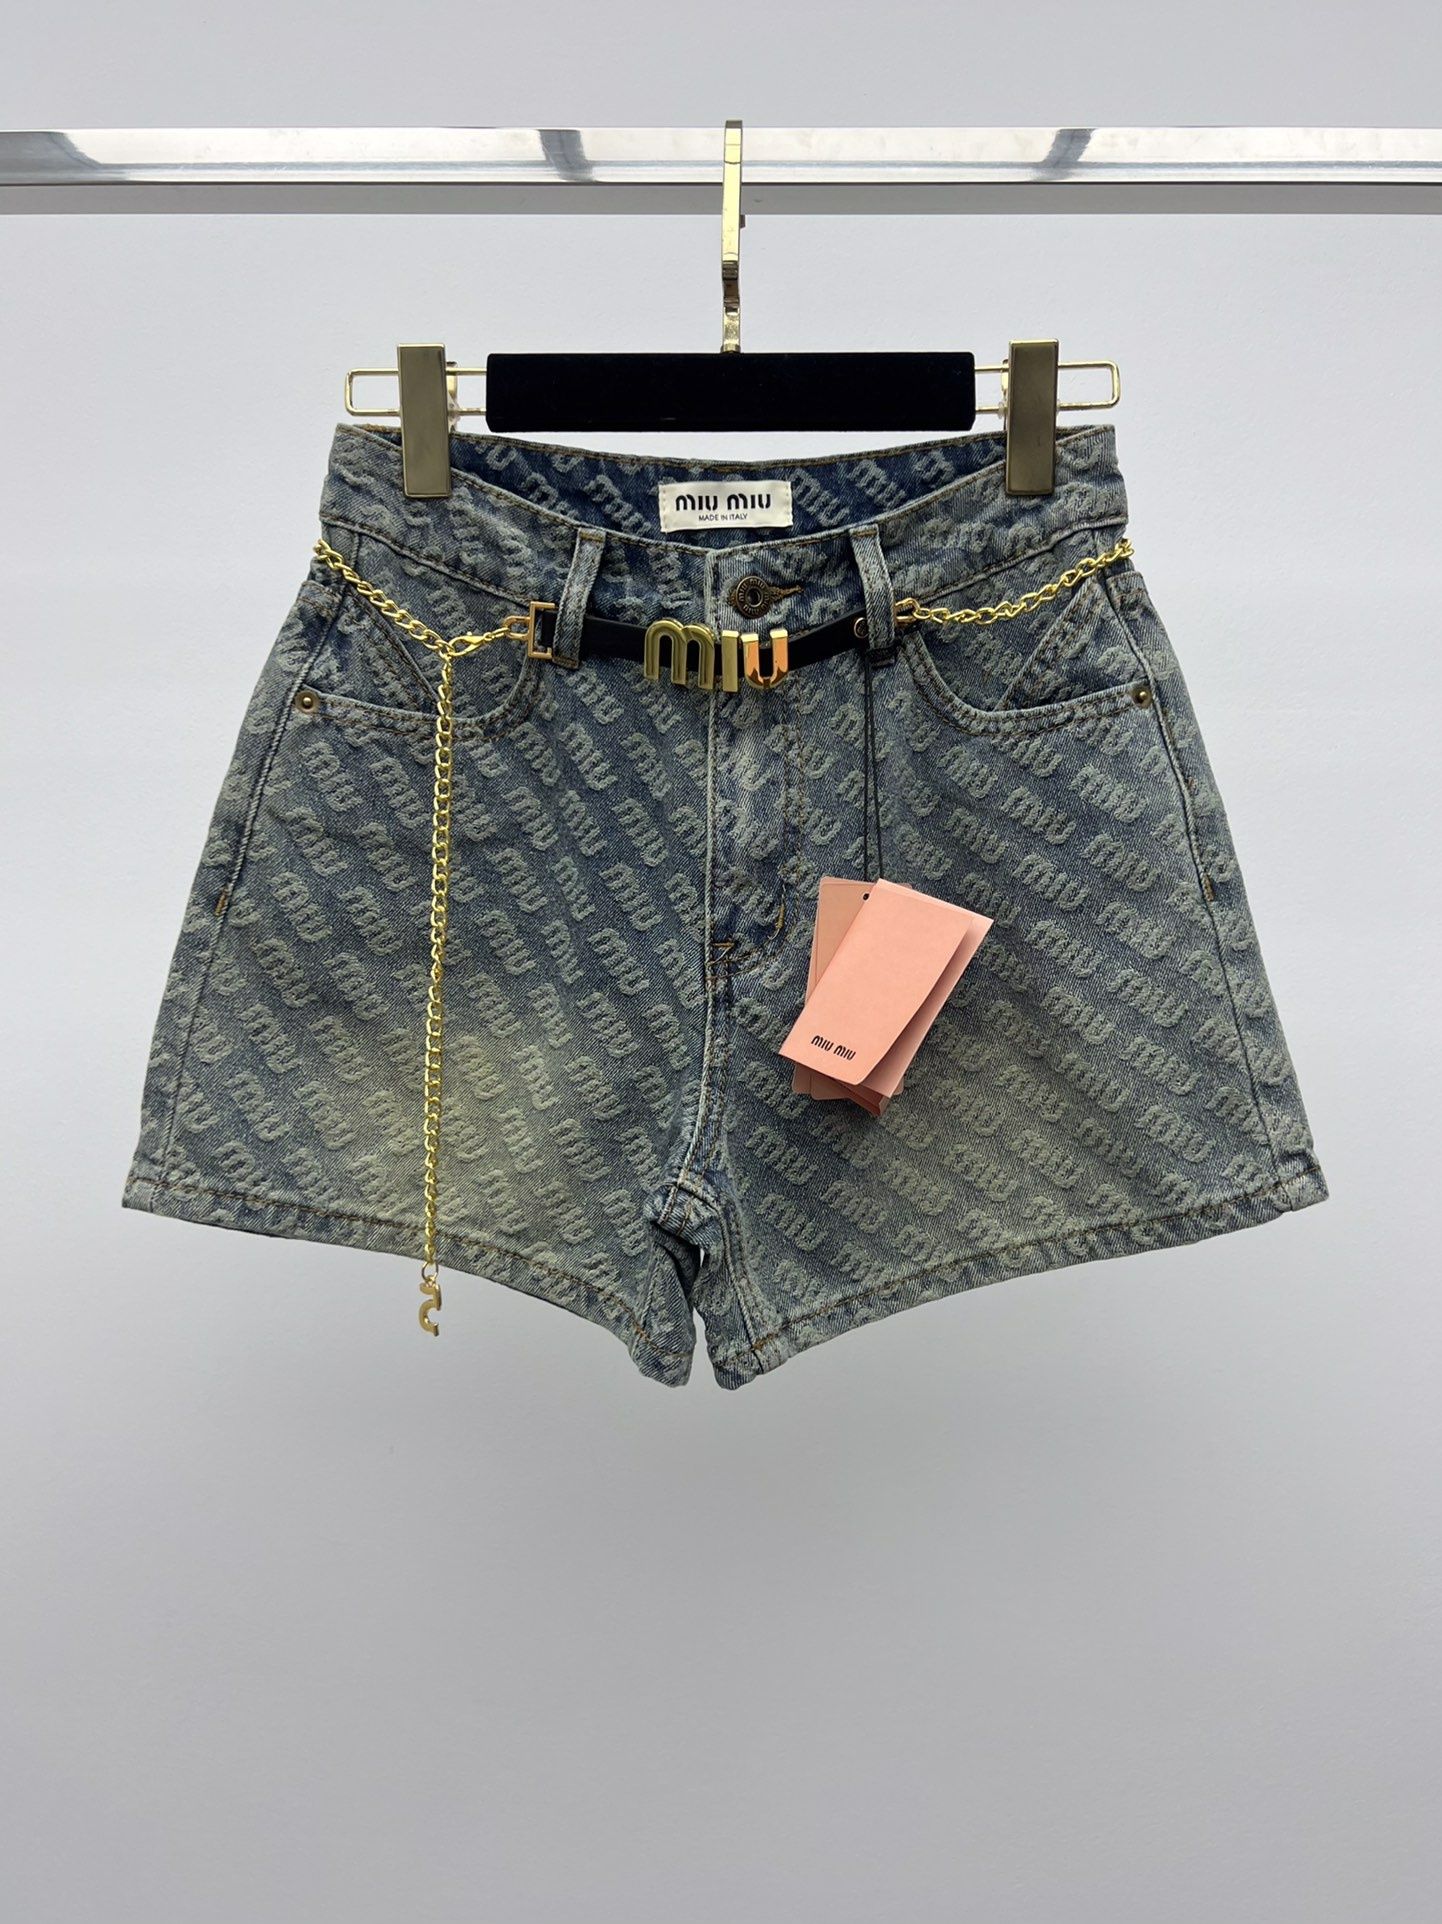 MIU MIU® Luksusowe spodenki jeansowe spodnie szorty dżins